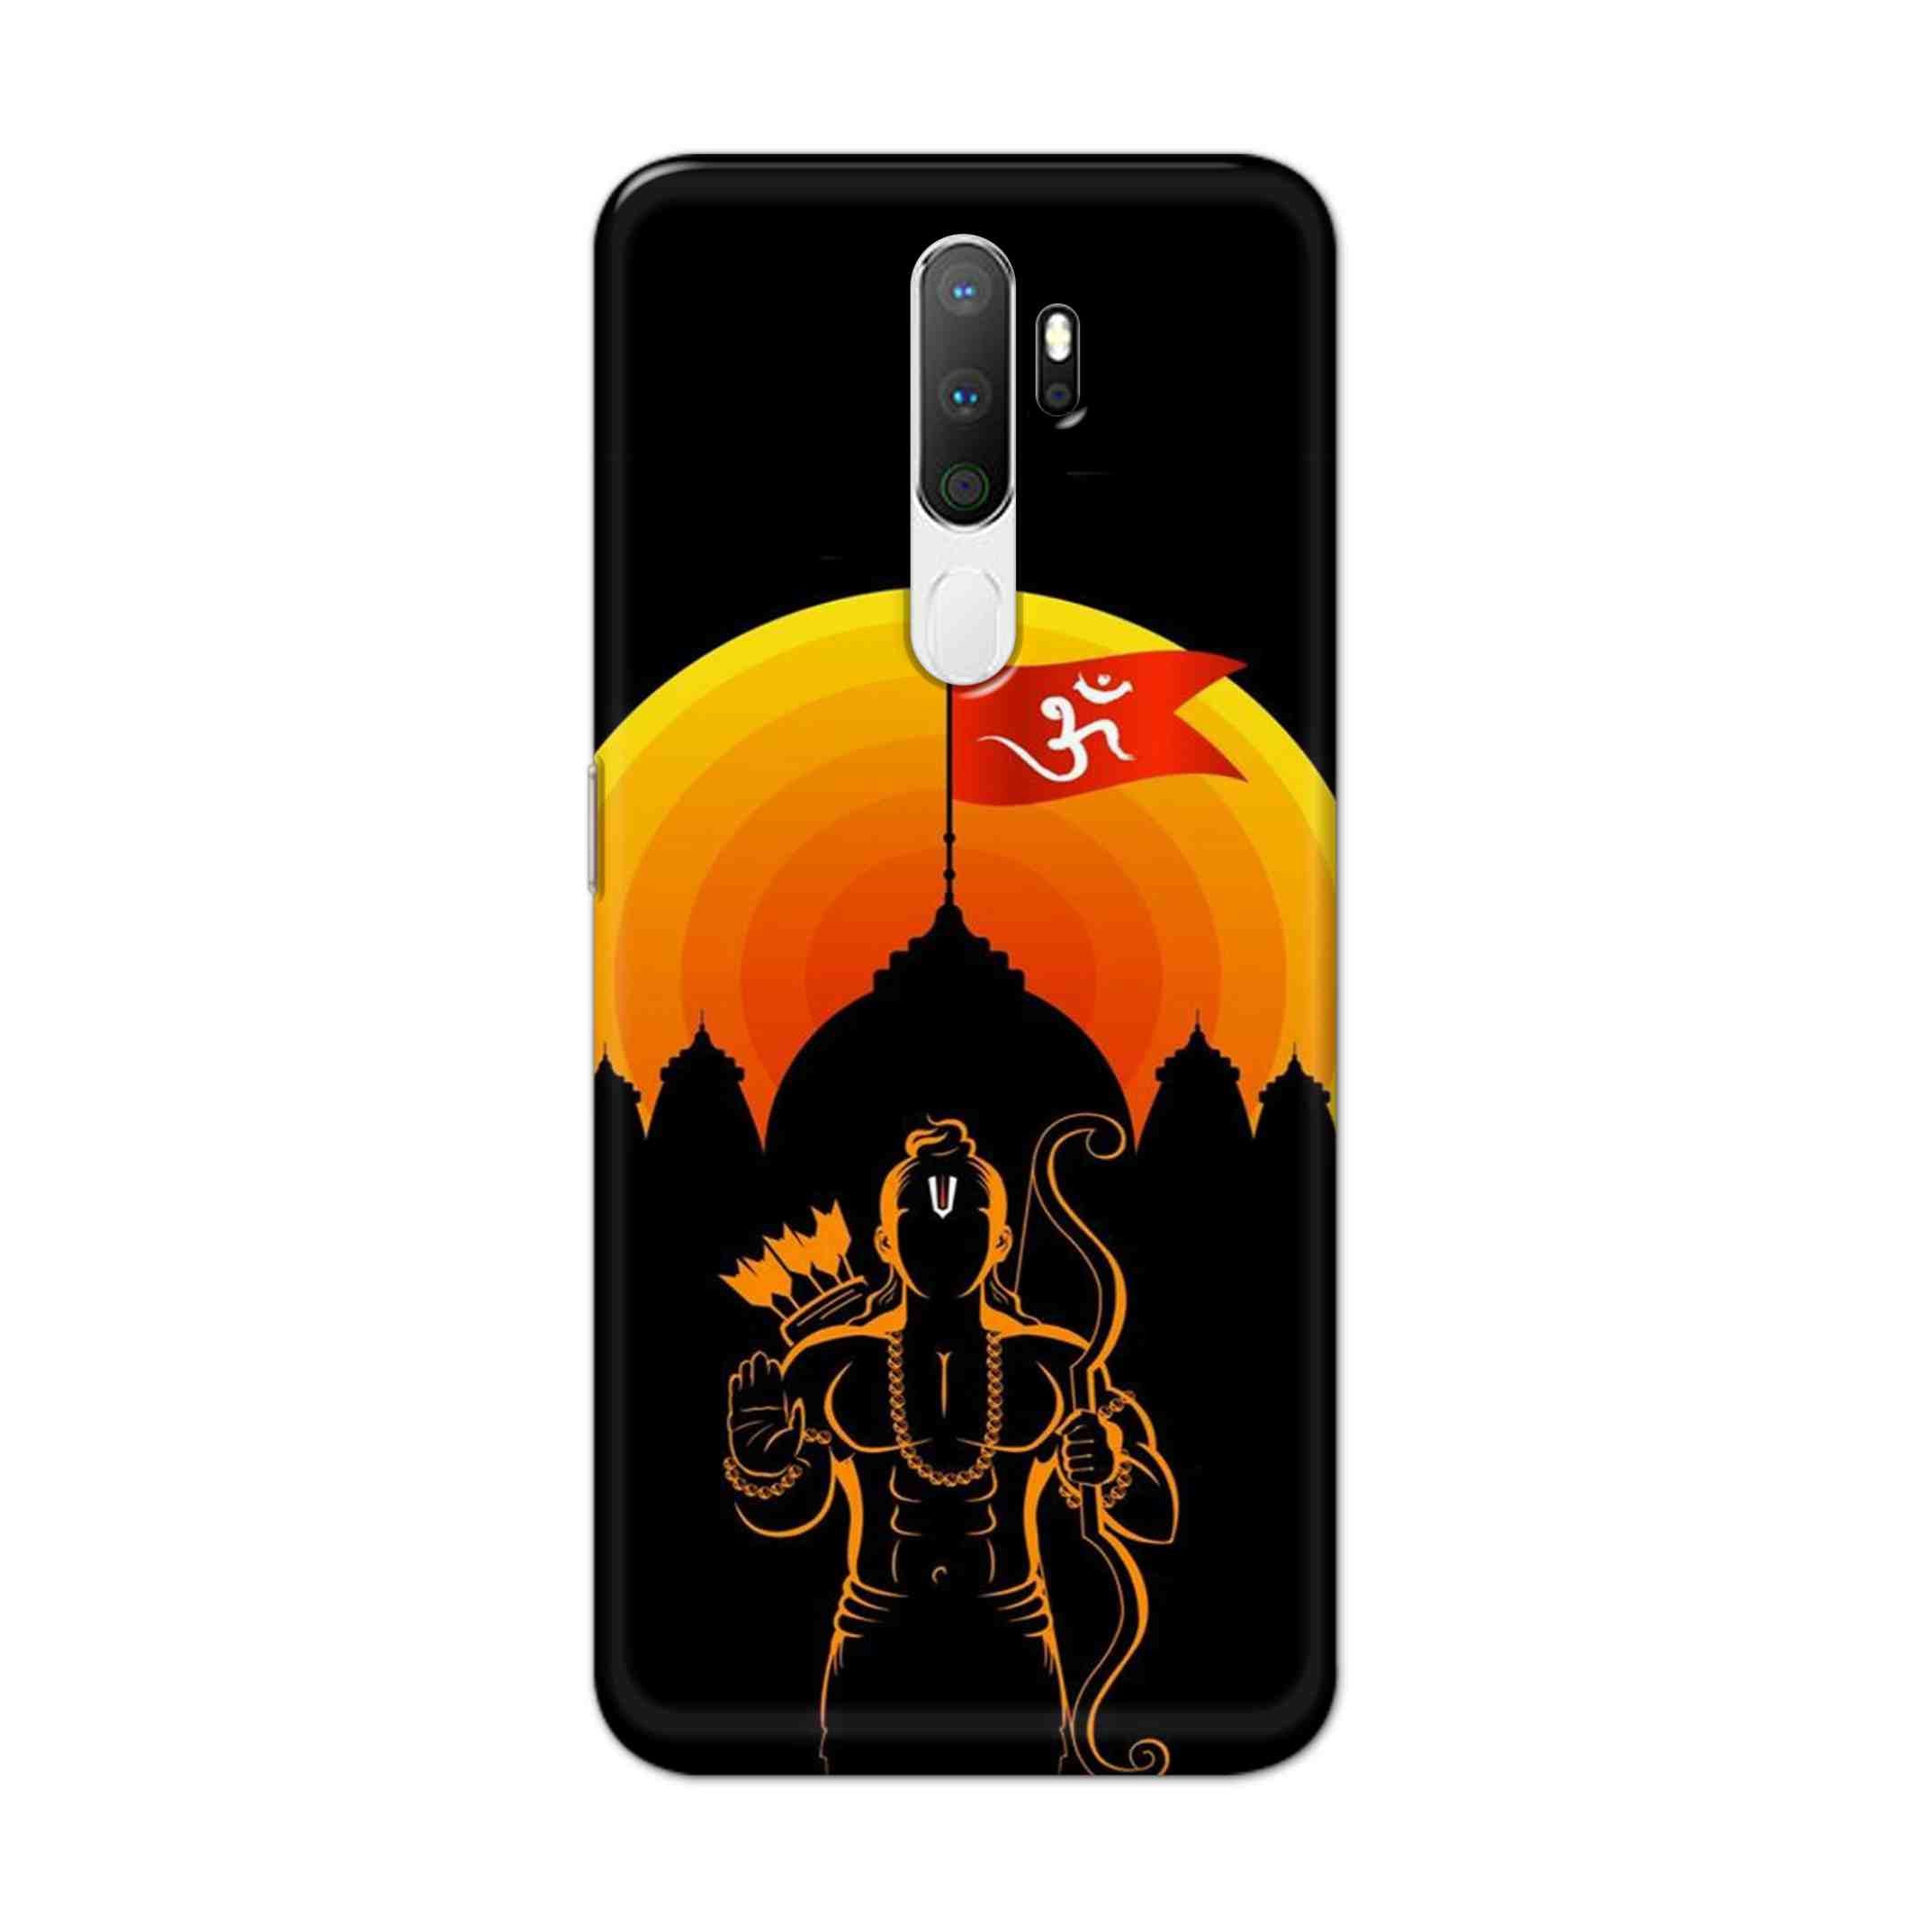 Buy Ram Ji Hard Back Mobile Phone Case Cover For Oppo A5 (2020) Online